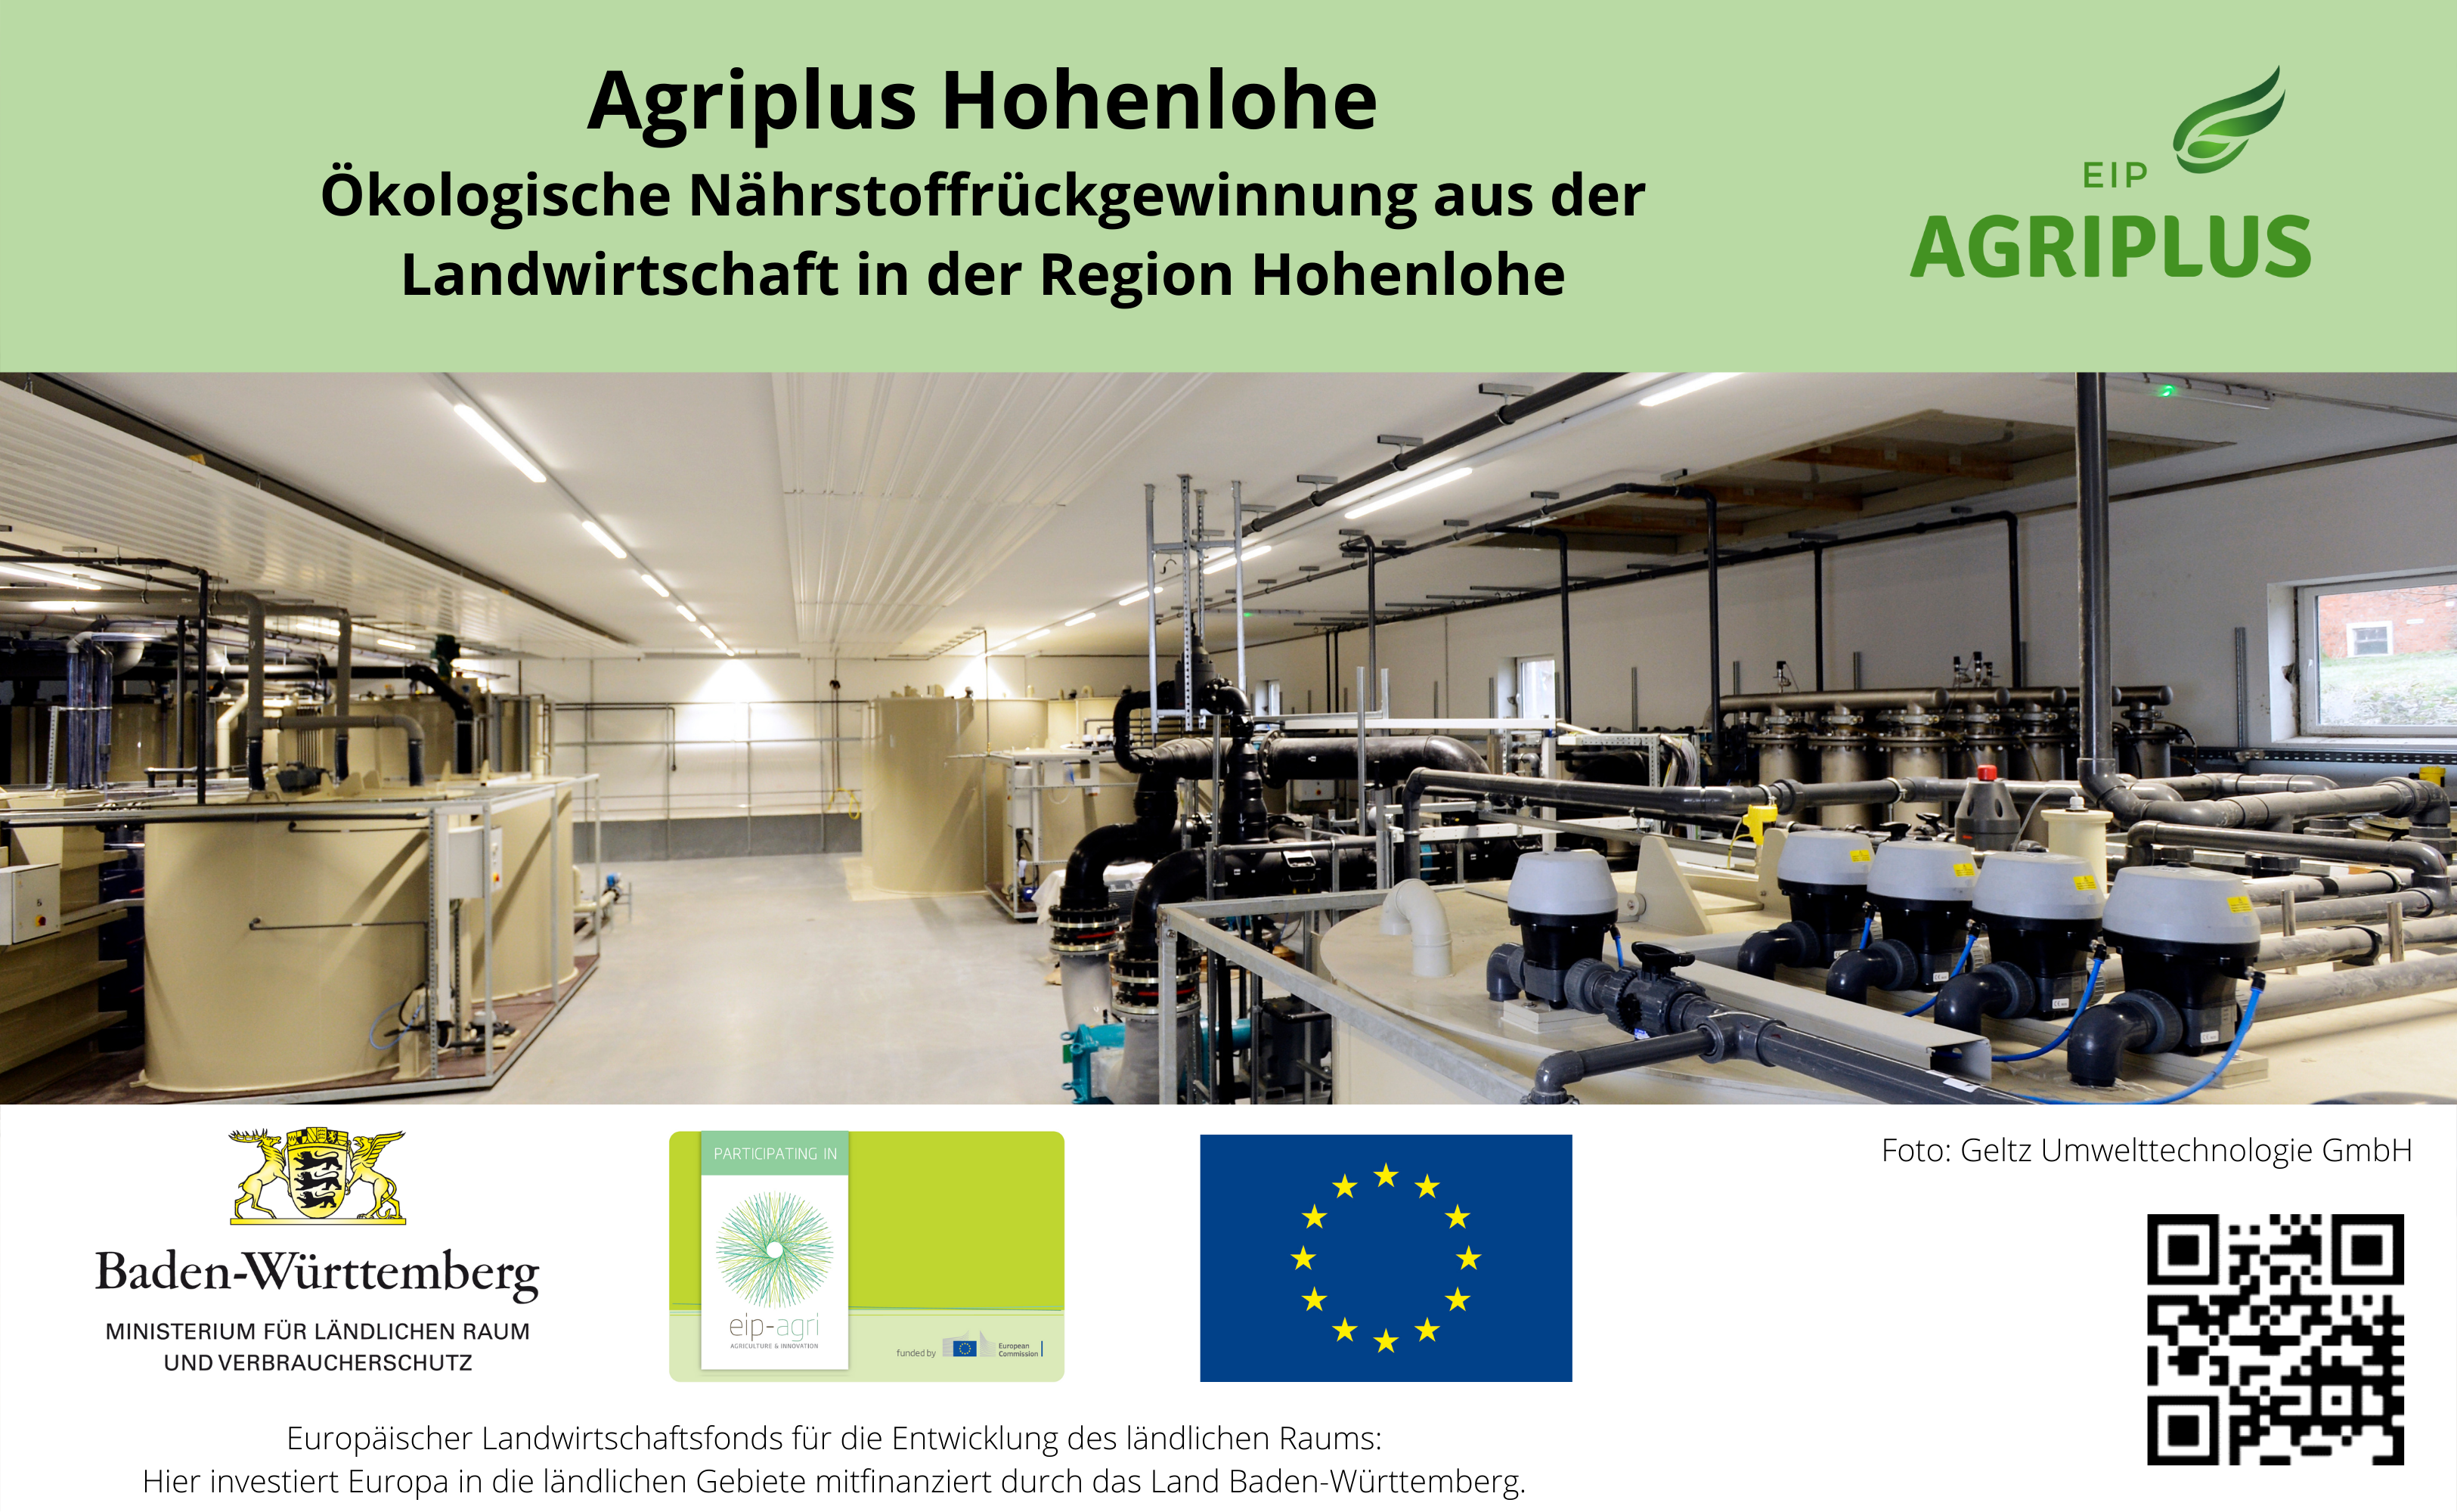 Eine ökologische Nährstoffrückgewinnung aus der Landwirtschaft in der Region Hohenlohe